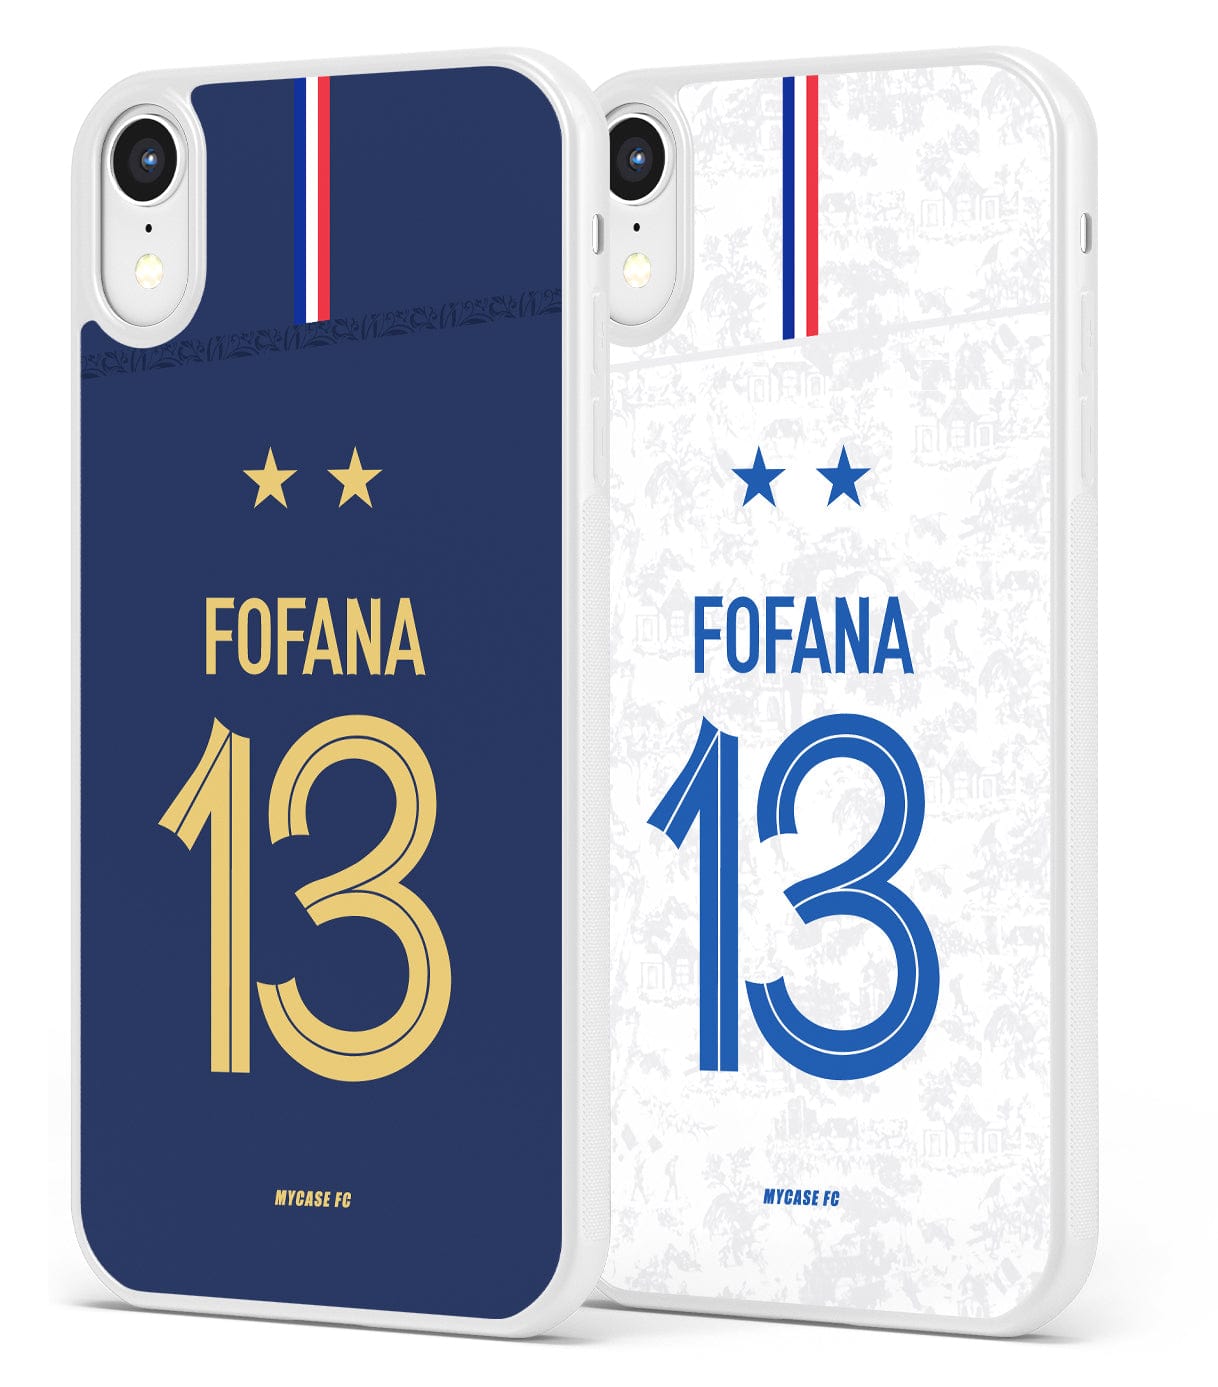 FRANCE - FOFANA - MYCASE FC